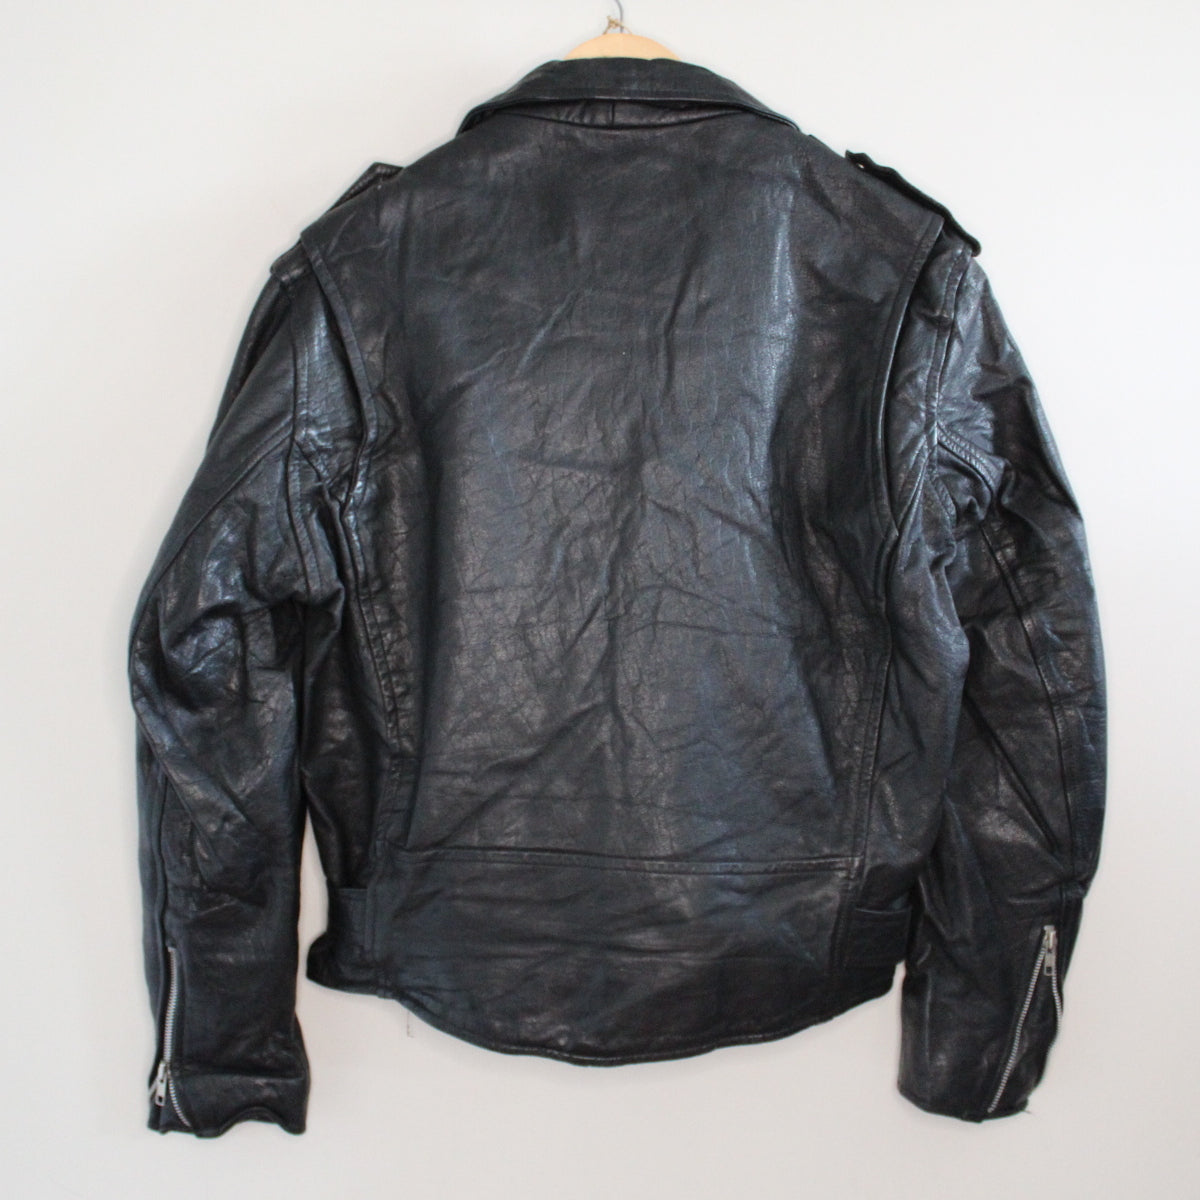 Vintage leather 80s biker jacket